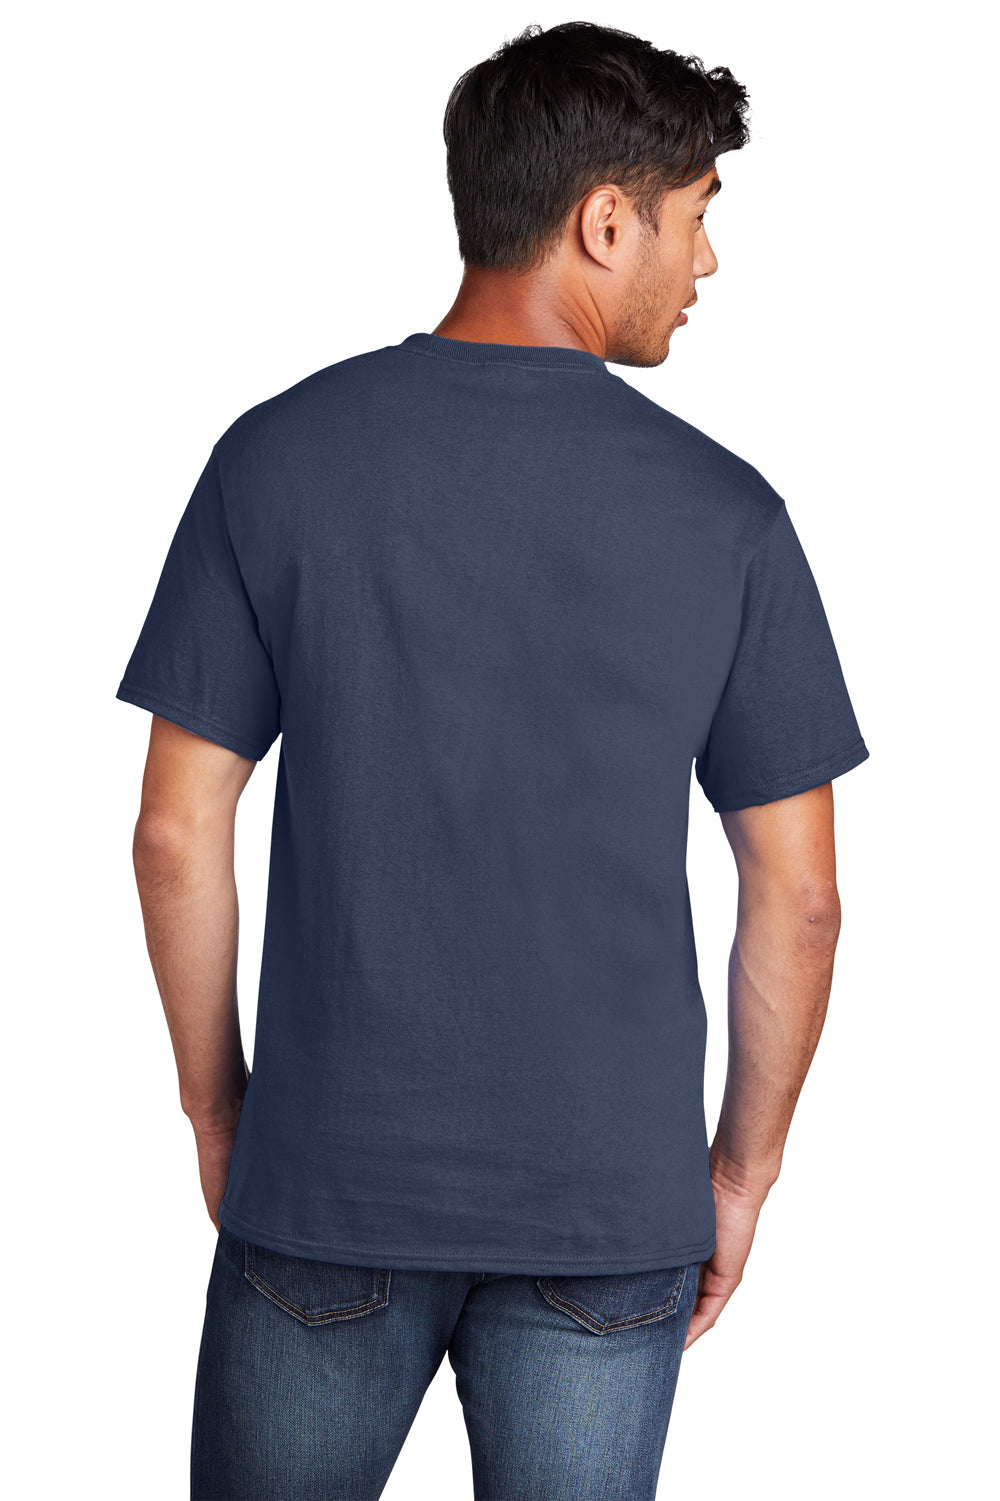 Port & Company PC54DTG Core Cotton DTG Short Sleeve Crewneck T-Shirt Navy Blue Back